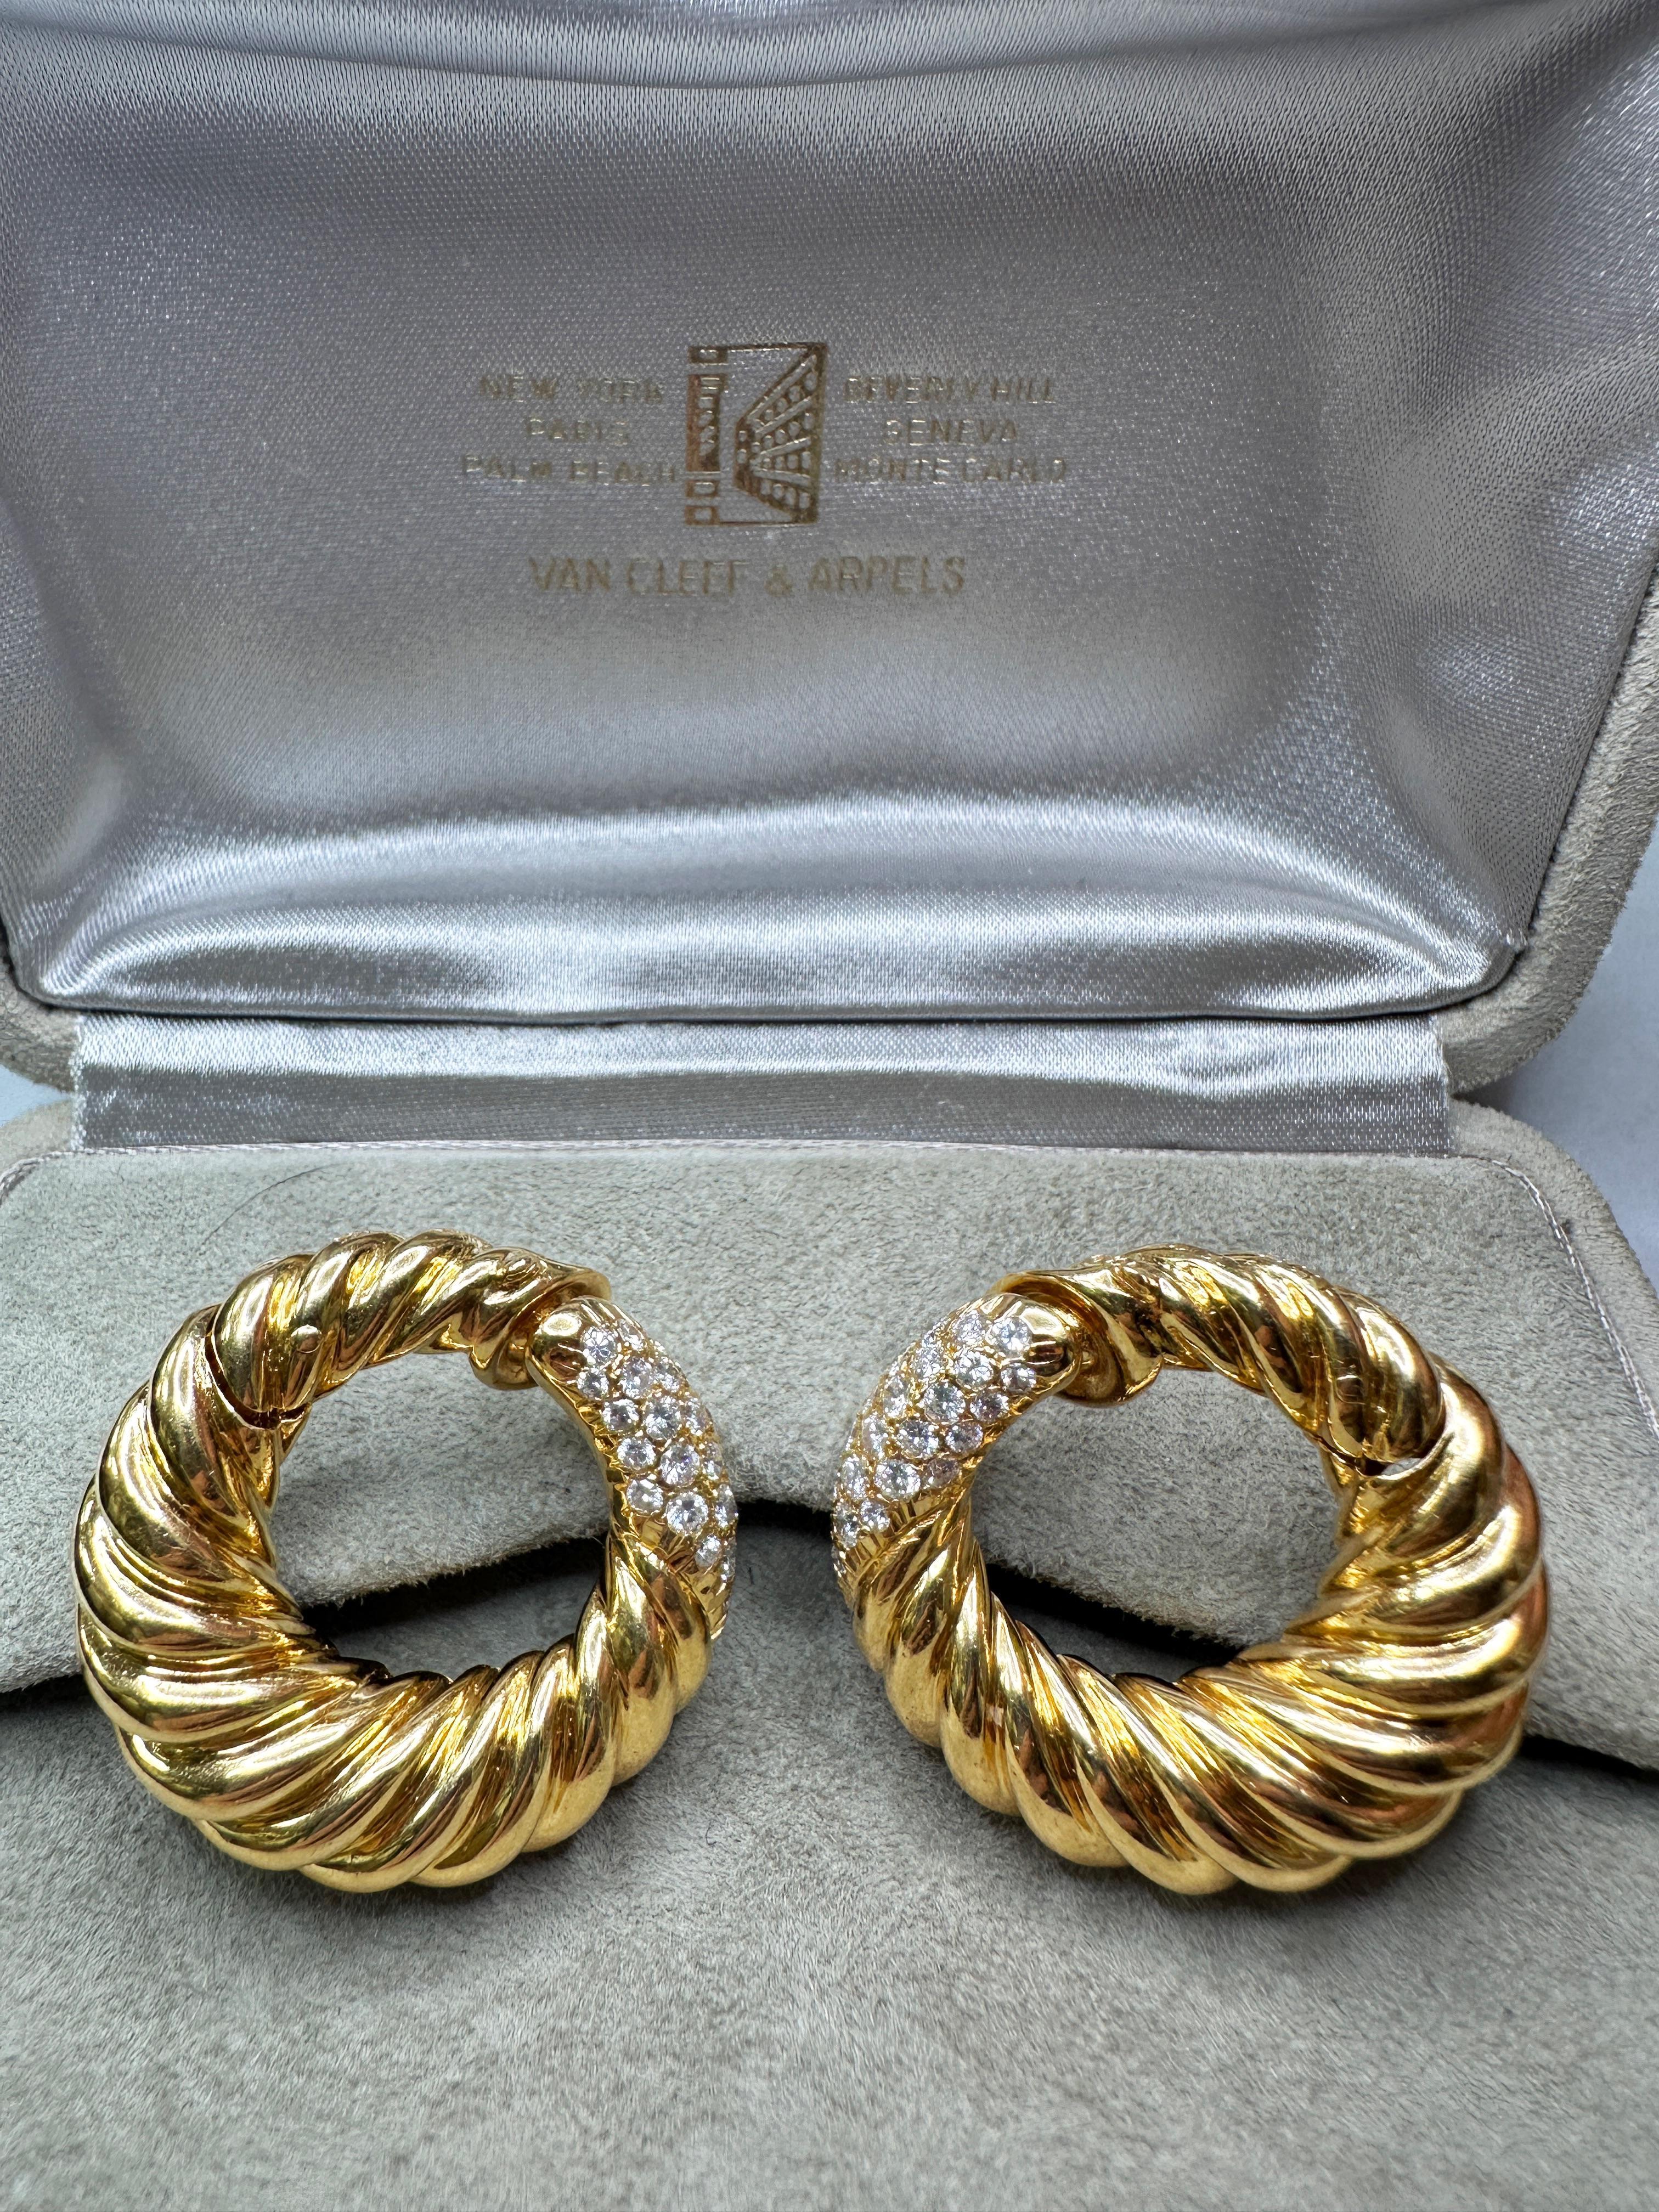 Eleva il tuo stile con questi splendidi fermagli a cerchio con diamanti Van Cleef & Arpels degli anni '80. Realizzati con 2,00 carati di diamanti scintillanti e contrassegnati dal prestigioso marchio 